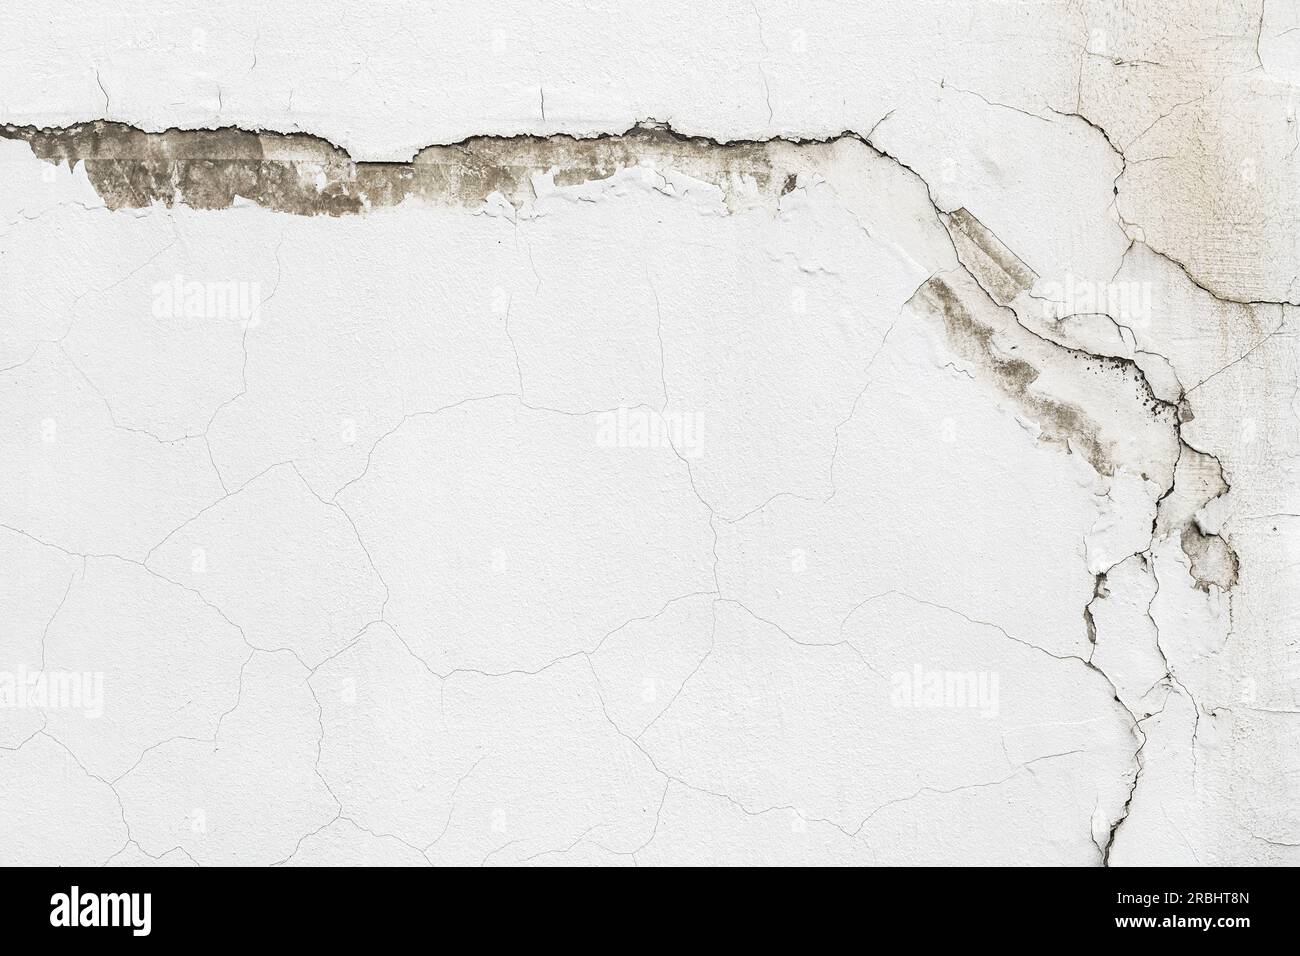 Vecchio muro di cemento bianco con crepe intricate e motivi unici. La trama ruvida e lo sfondo in difficoltà con spazio per la copia. Foto Stock